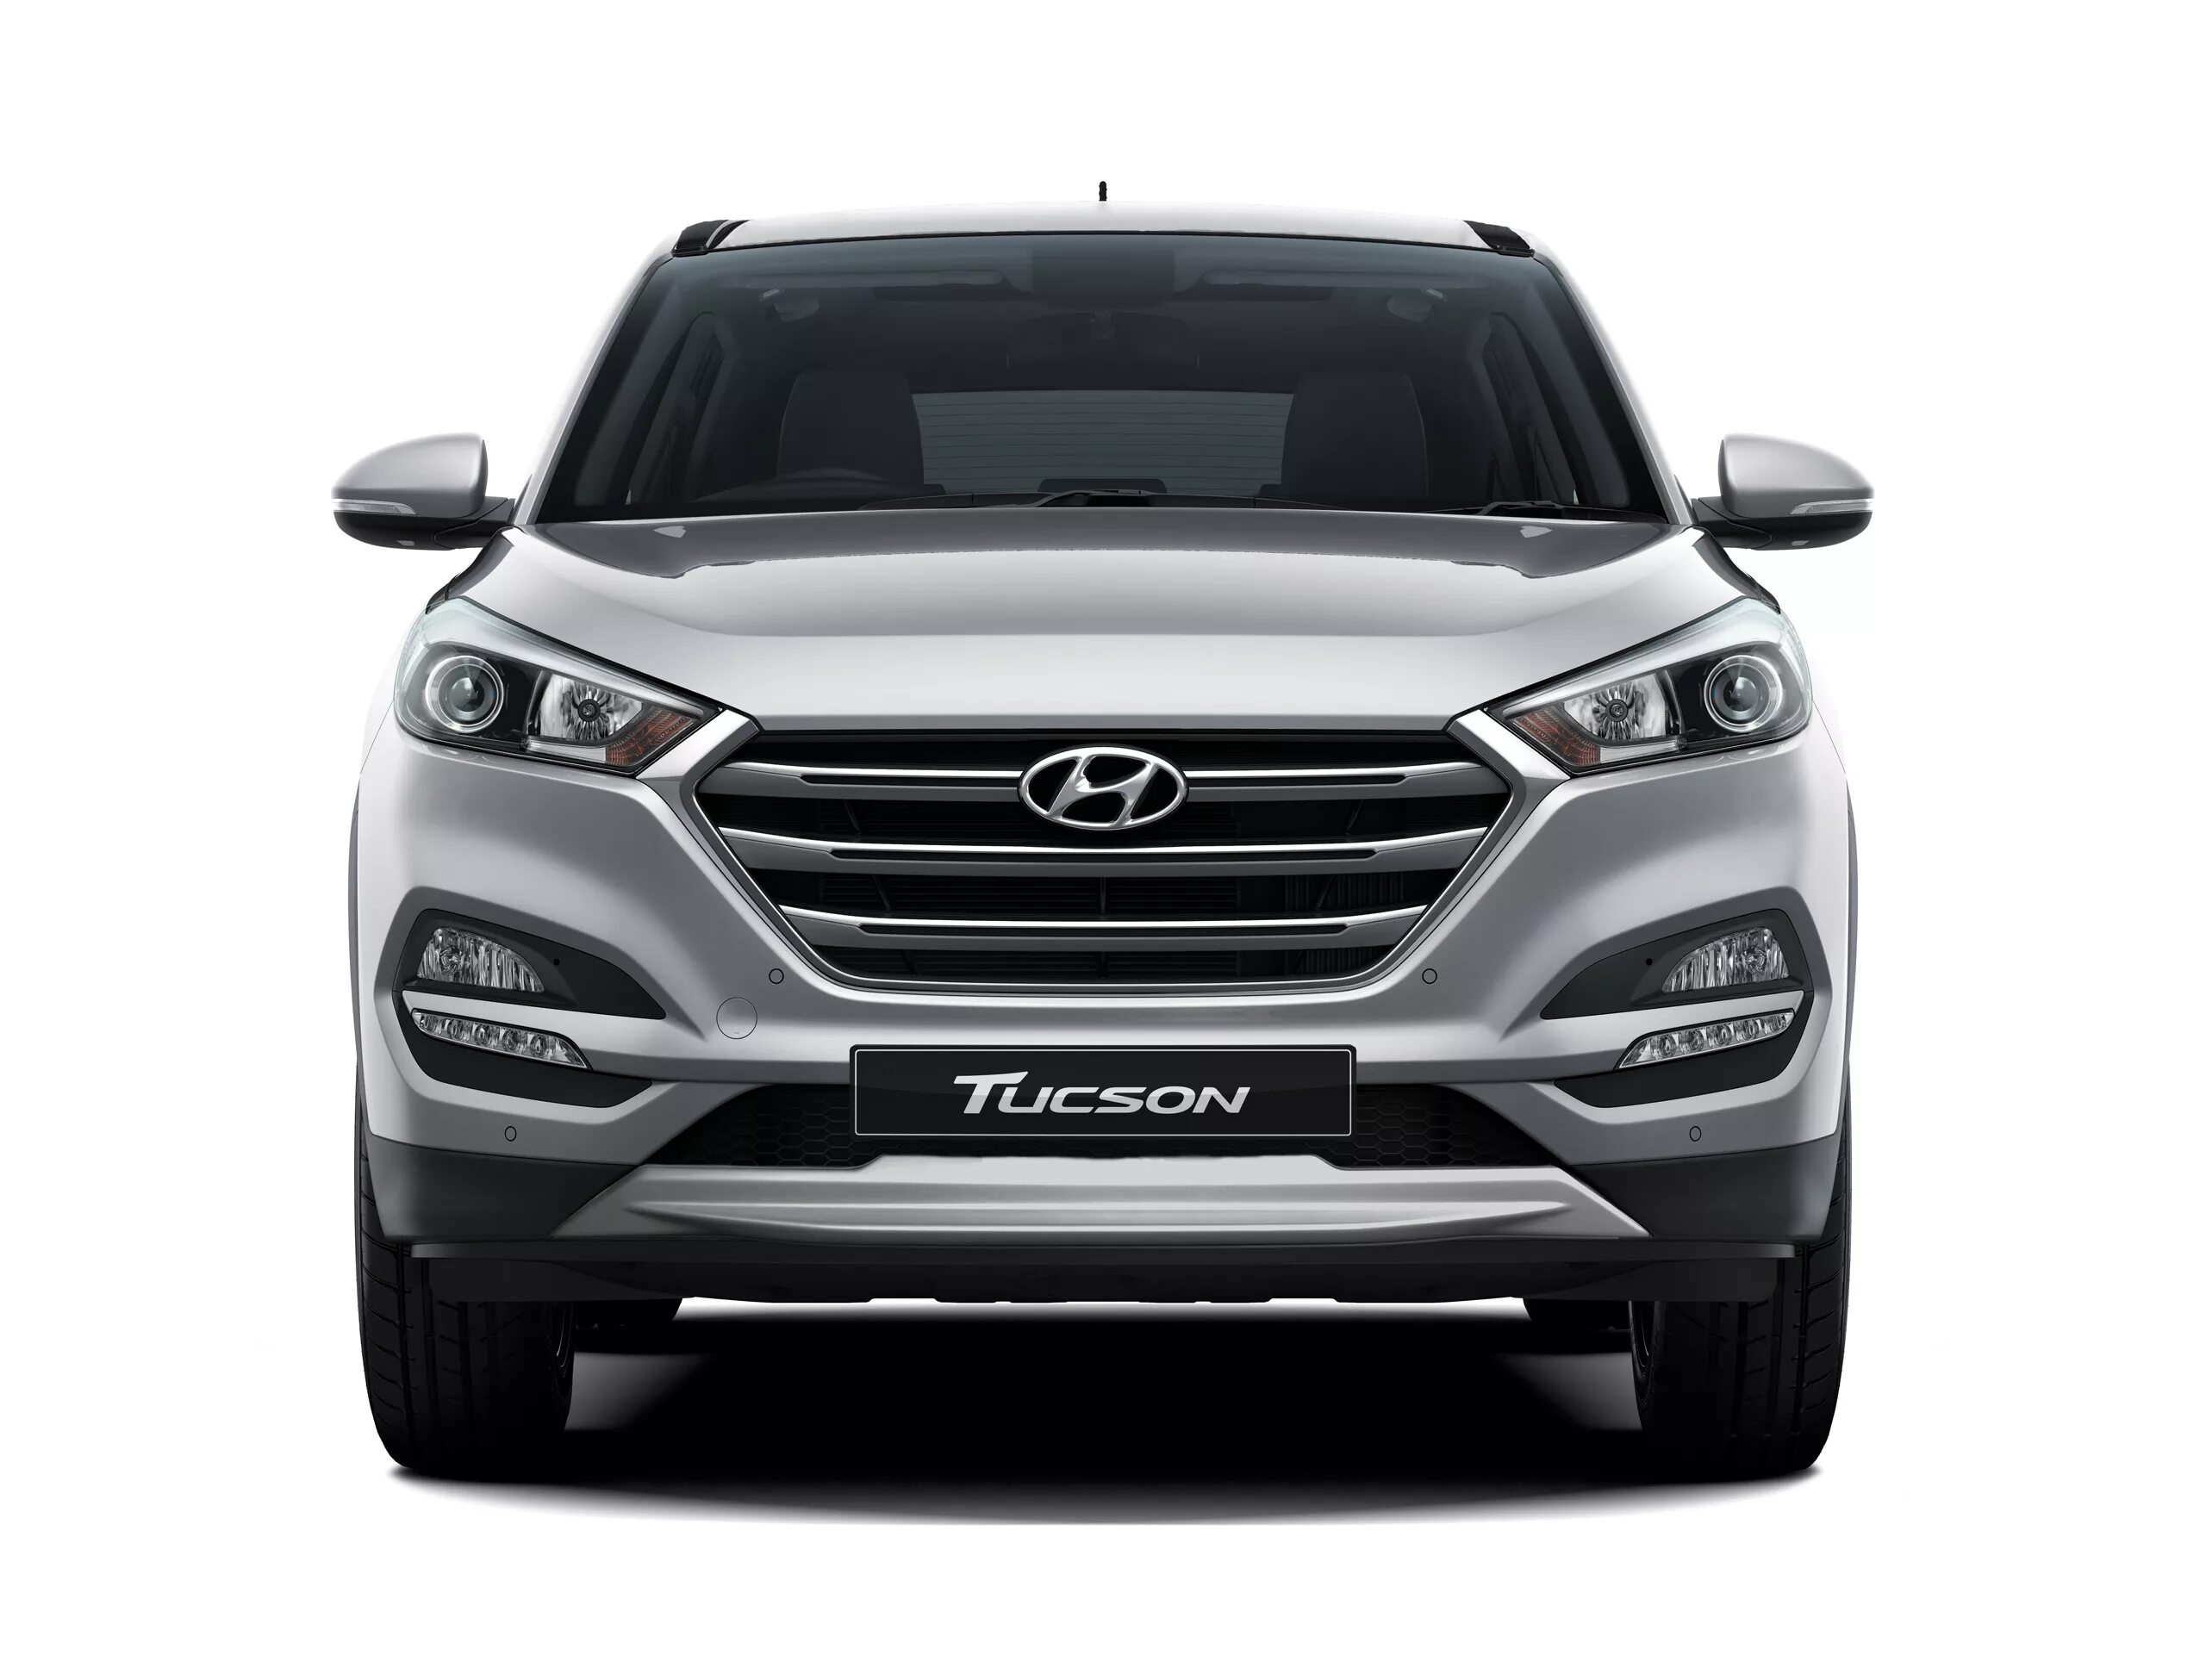 Hyundai Tucson 2016. Hyundai Tucson Front 2022. Hyundai Tucson 2017. Hyundai Tucson 2018.